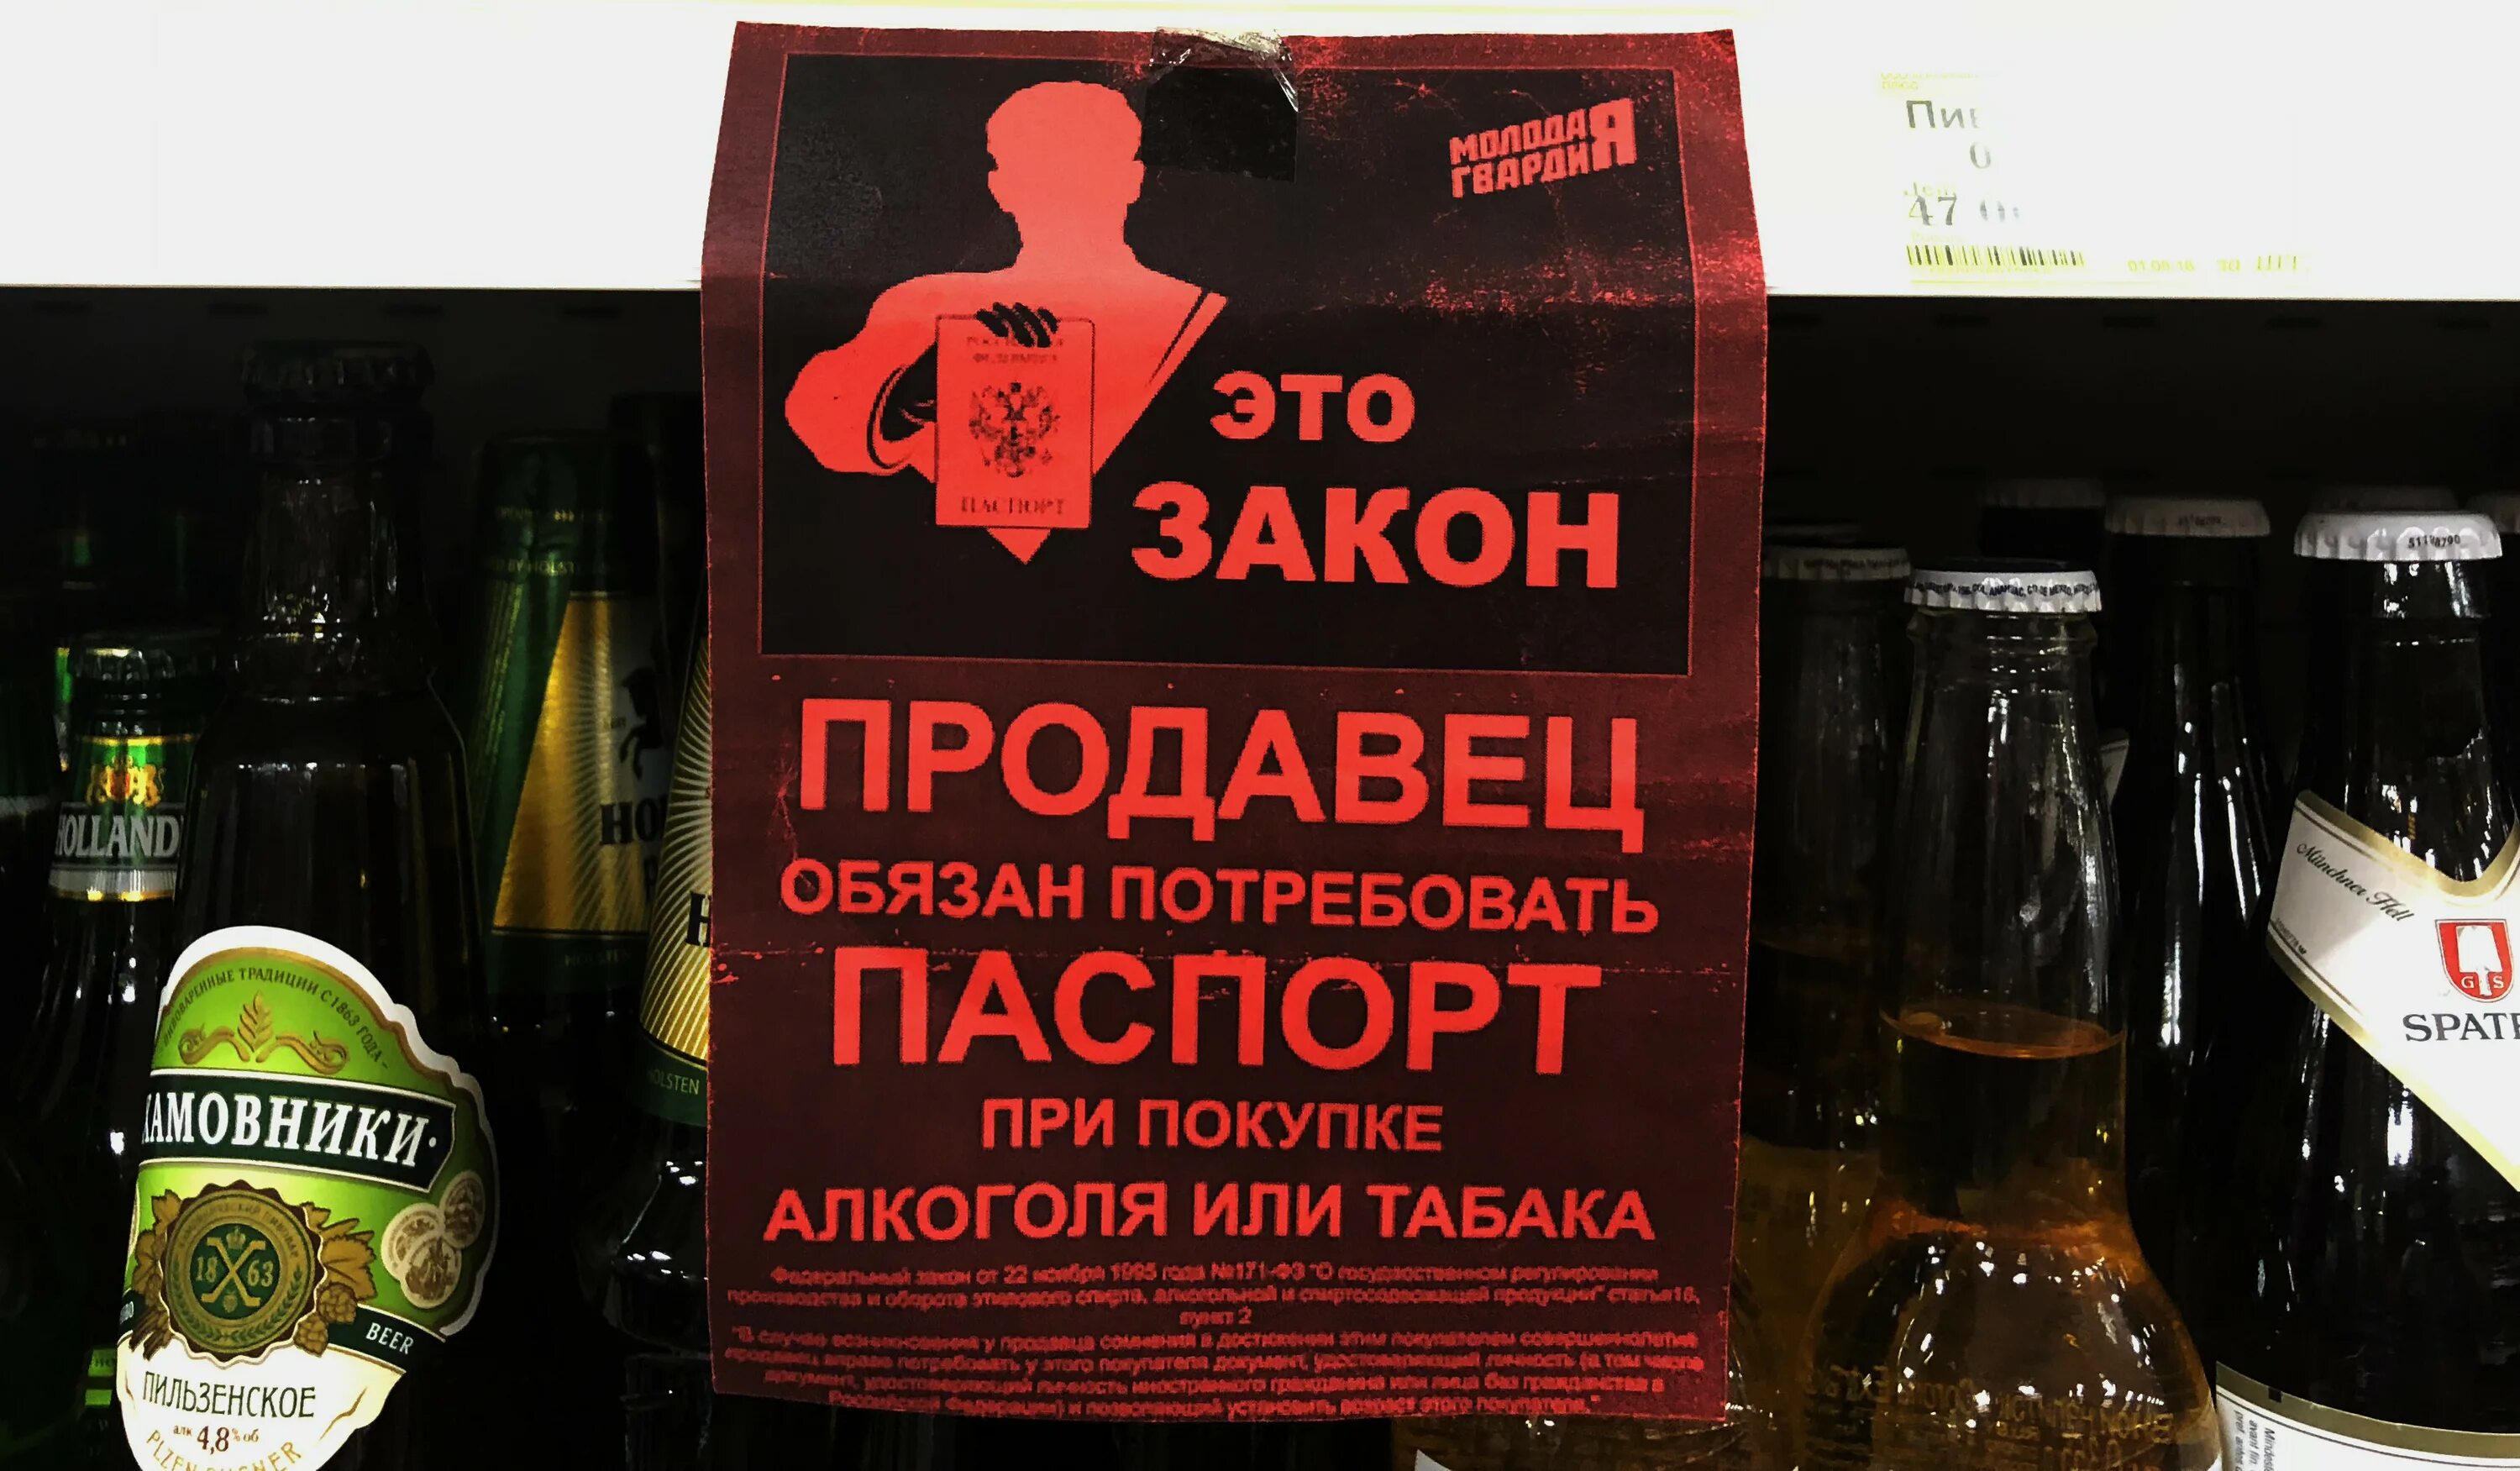 Алкогольный налог. Объявление о продаже алкогольных напитков.